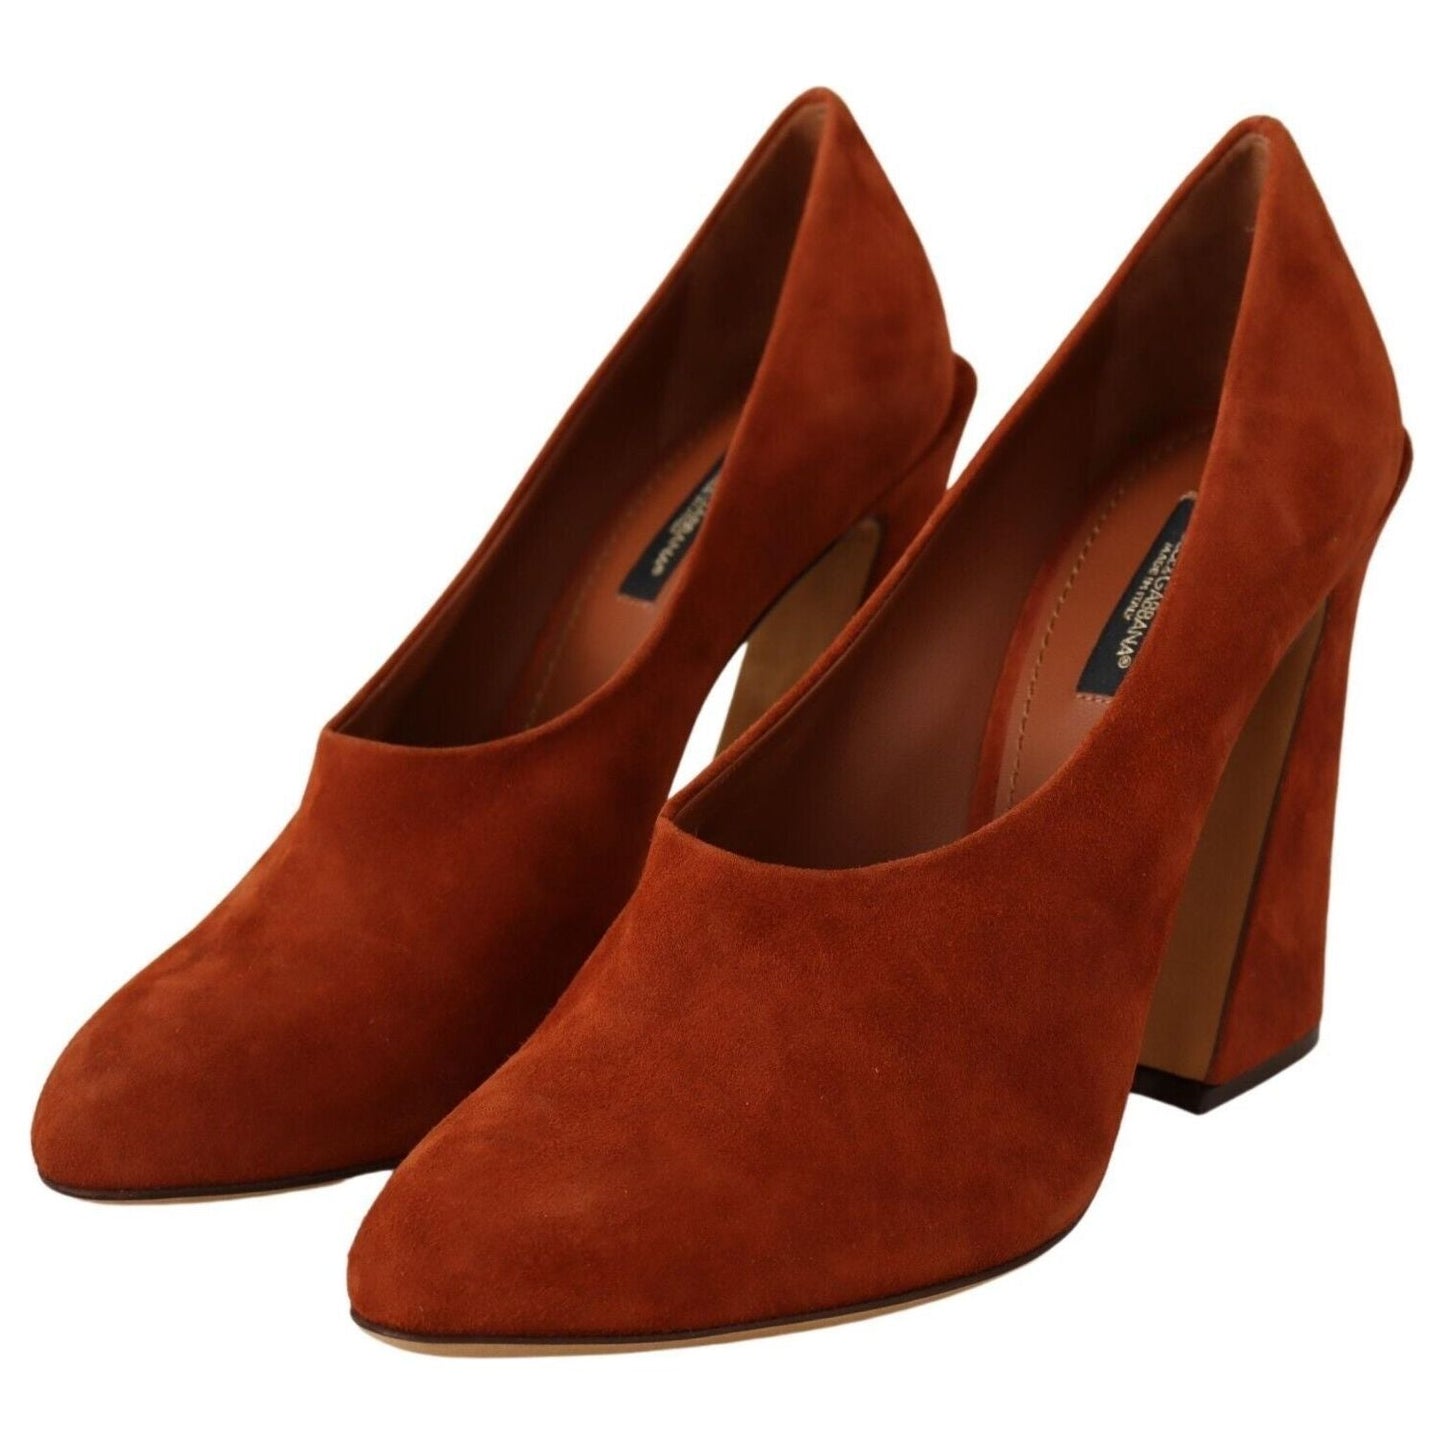 Dolce & Gabbana Elegant Cognac Suede Pumps brown-suede-leather-block-heels-pumps-shoes s-l1600-2-138-1b0d37e7-452.jpg